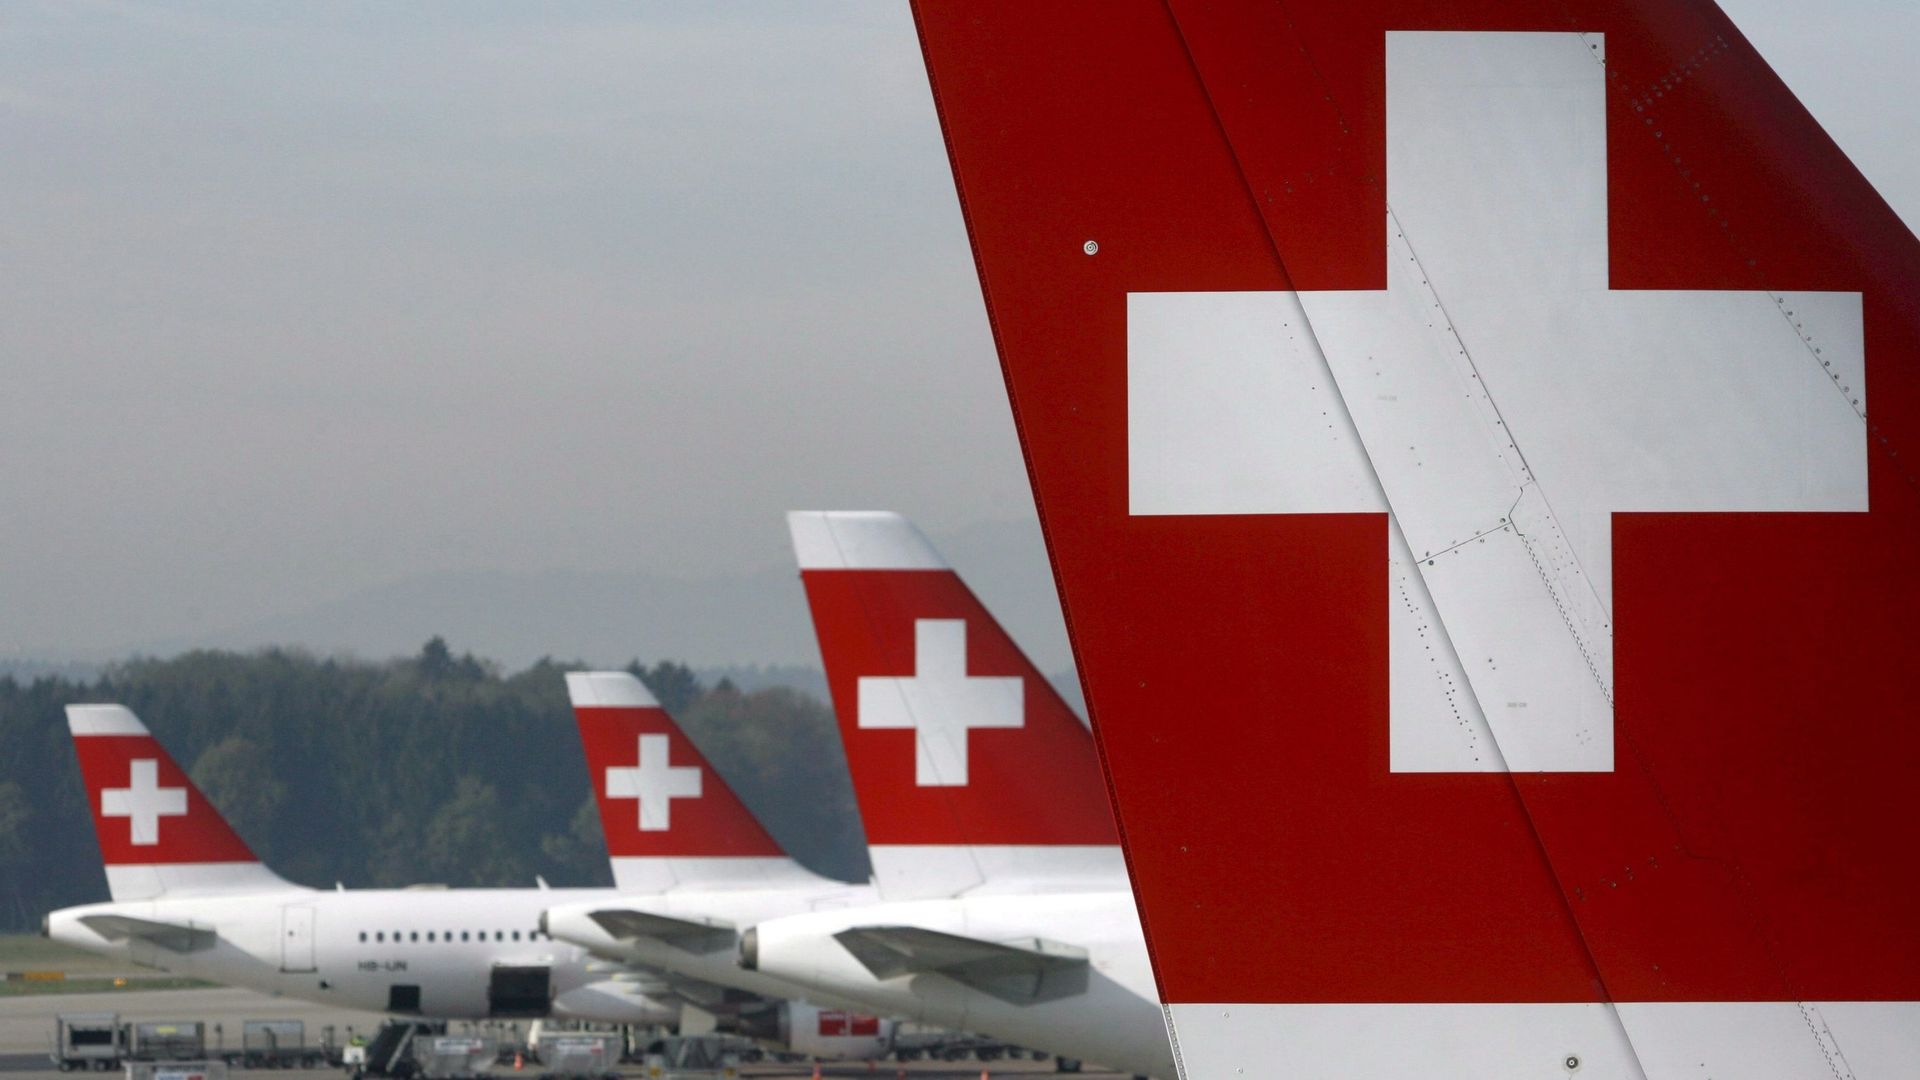 La compagnie aérienne Swiss envisage de supprimer 1700 équivalents temps plein